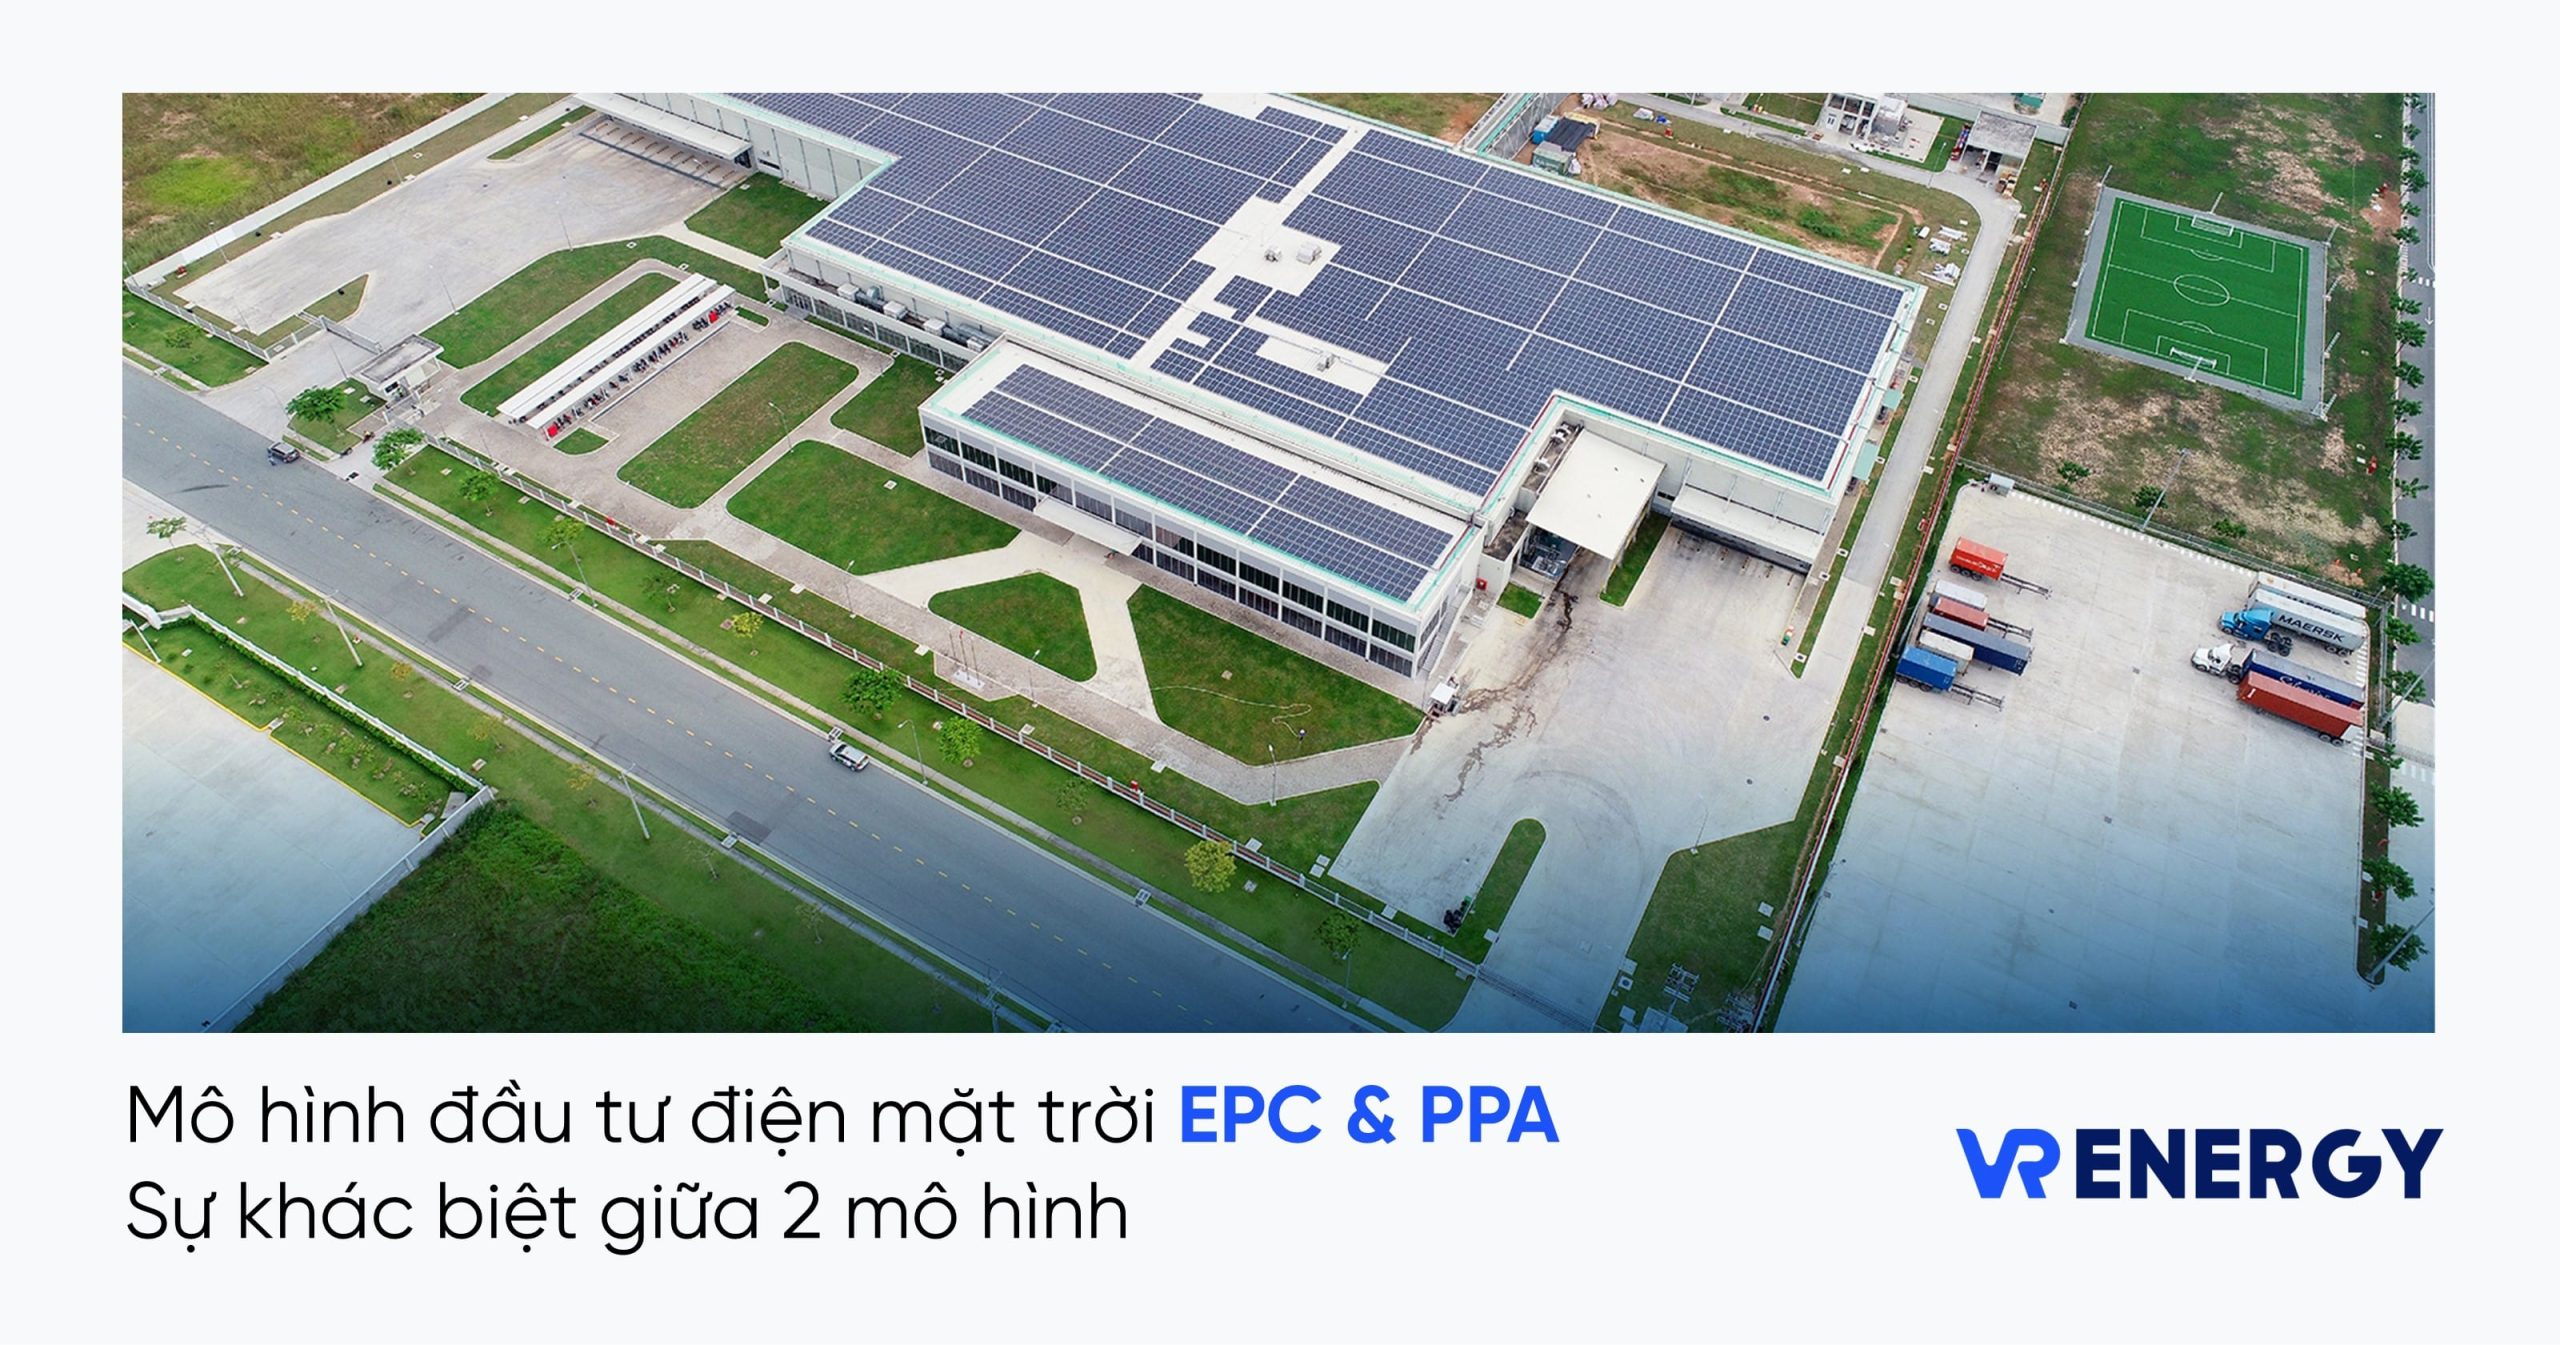 Mô hình đầu tư điện mặt trời EPC và PPA: Sự khác biệt giữa 2 mô hình